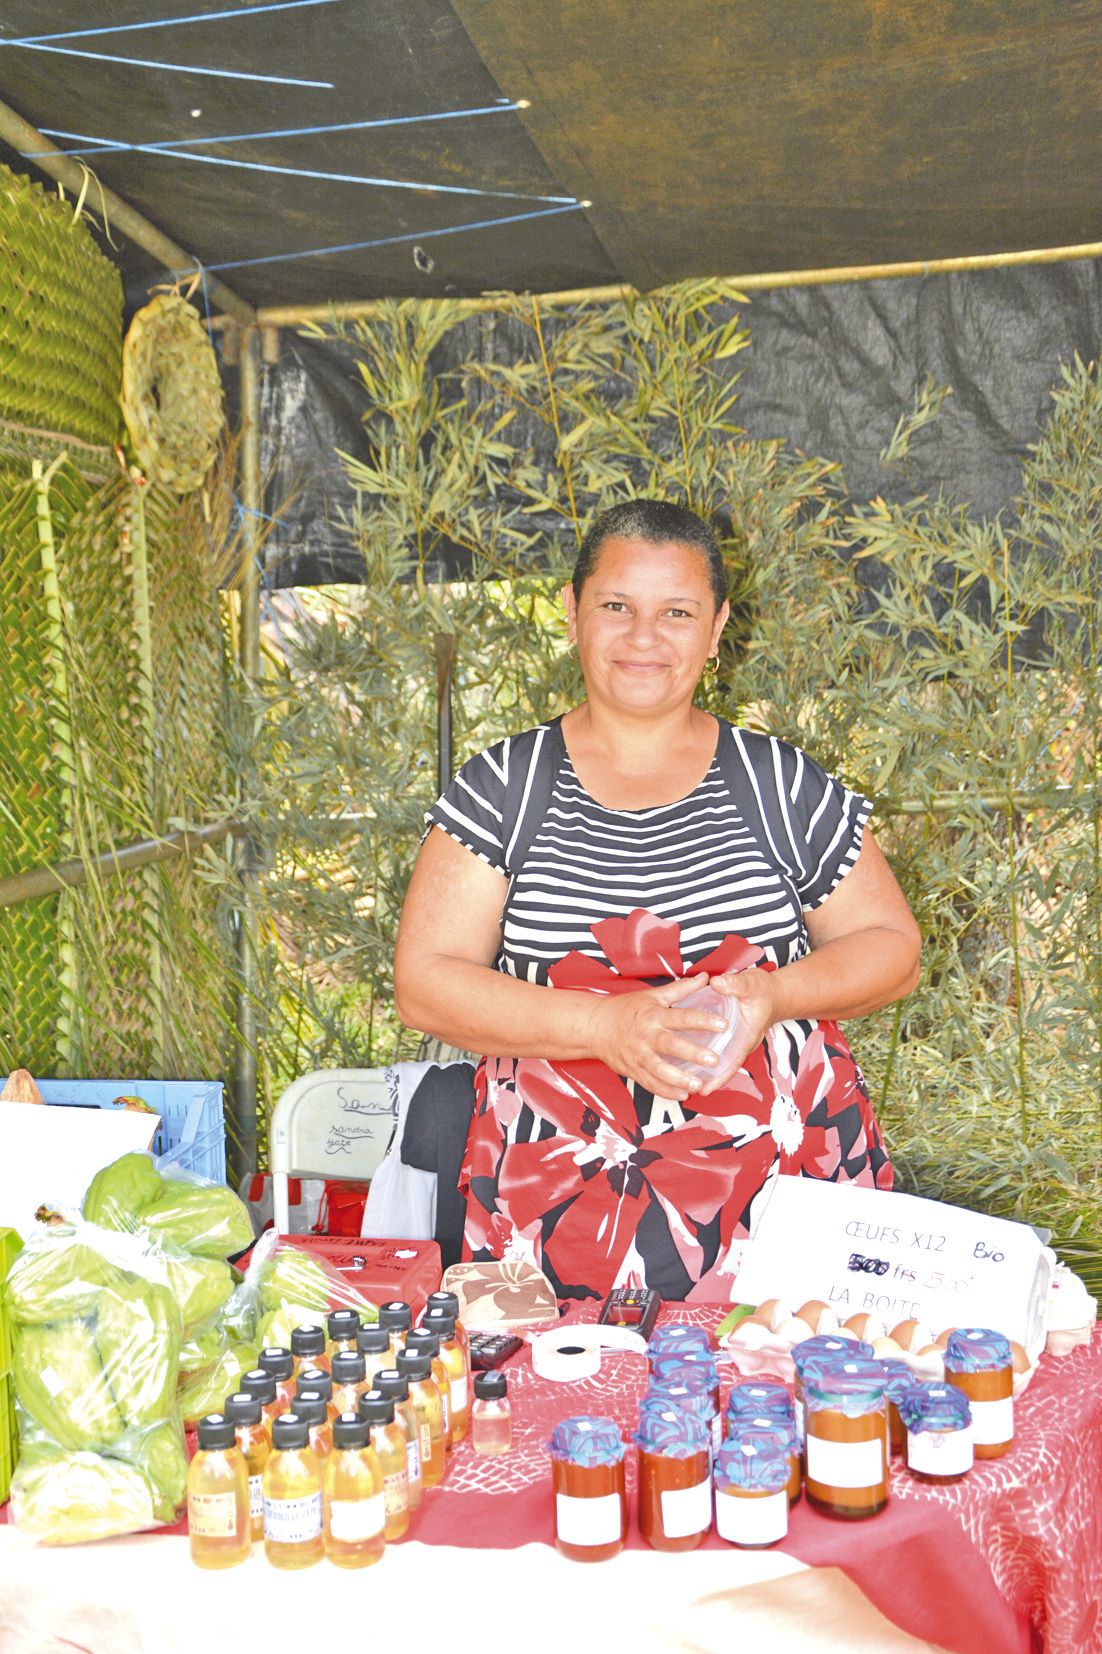 L’artisanat local et autres préparations naturelles, comme l’huile de coco bio fabriquée  à Yaté par Sandra, étaient disponibles sur les stands.